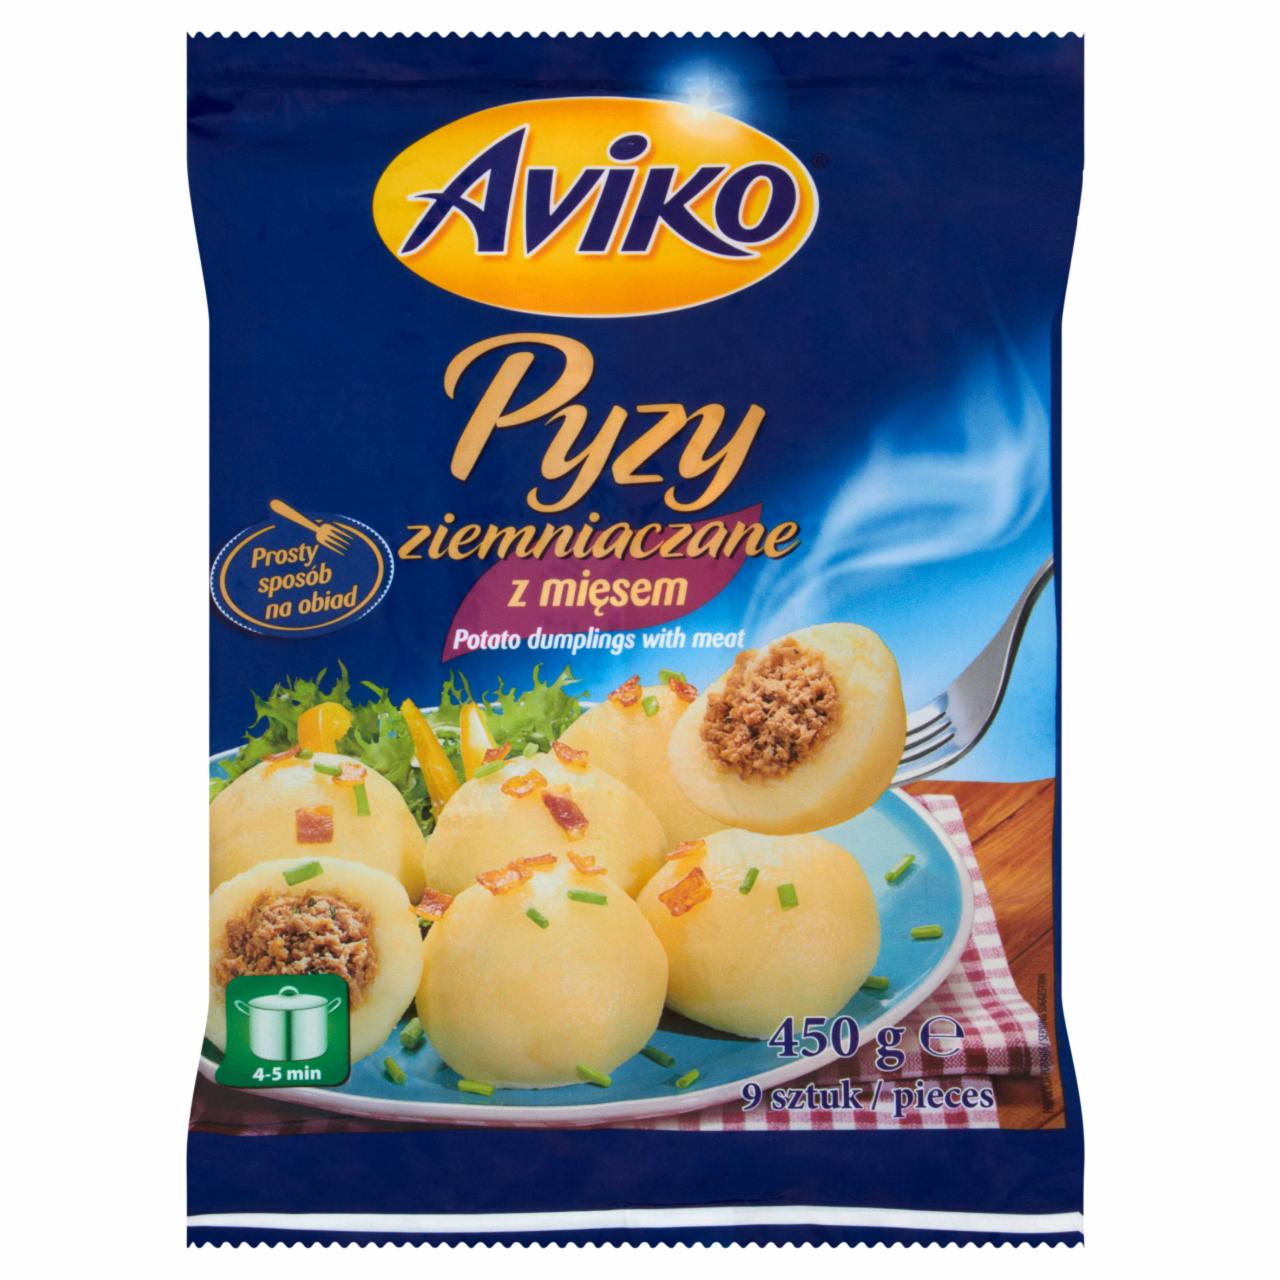 Photo - Aviko Potato Dumplings with Meat 450 g (9 Pieces)